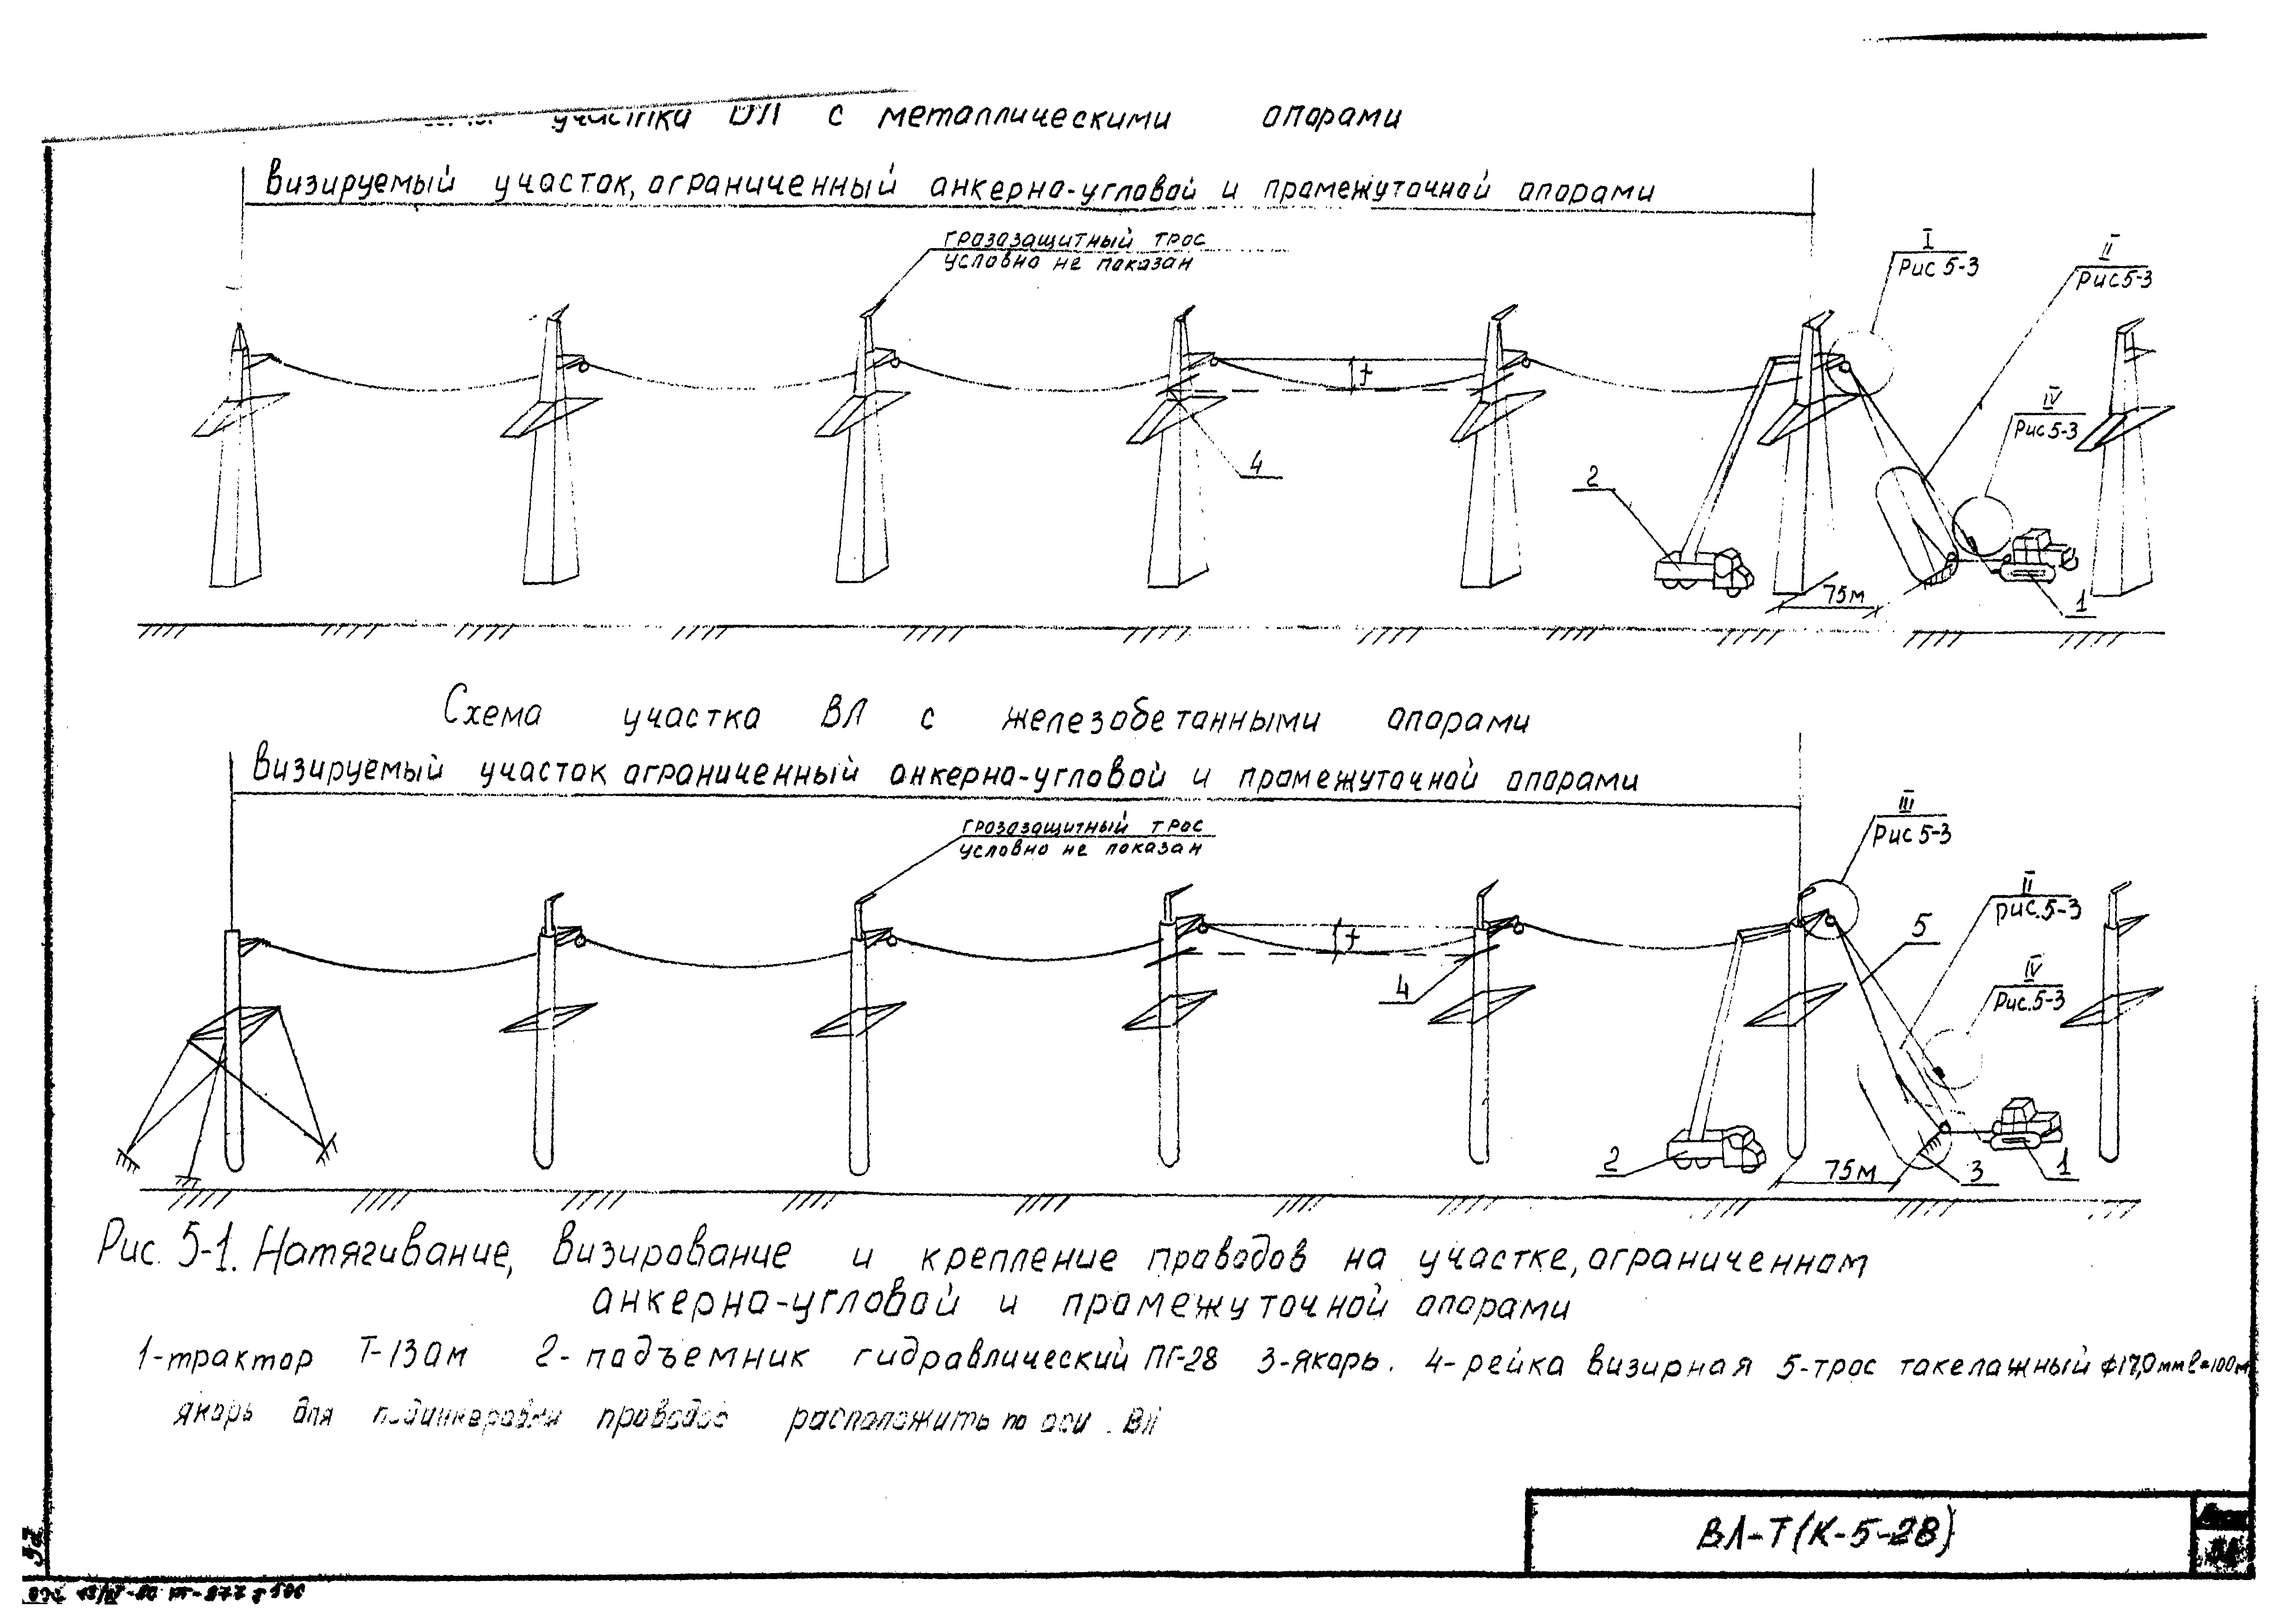 Технологическая карта К-5-28-5